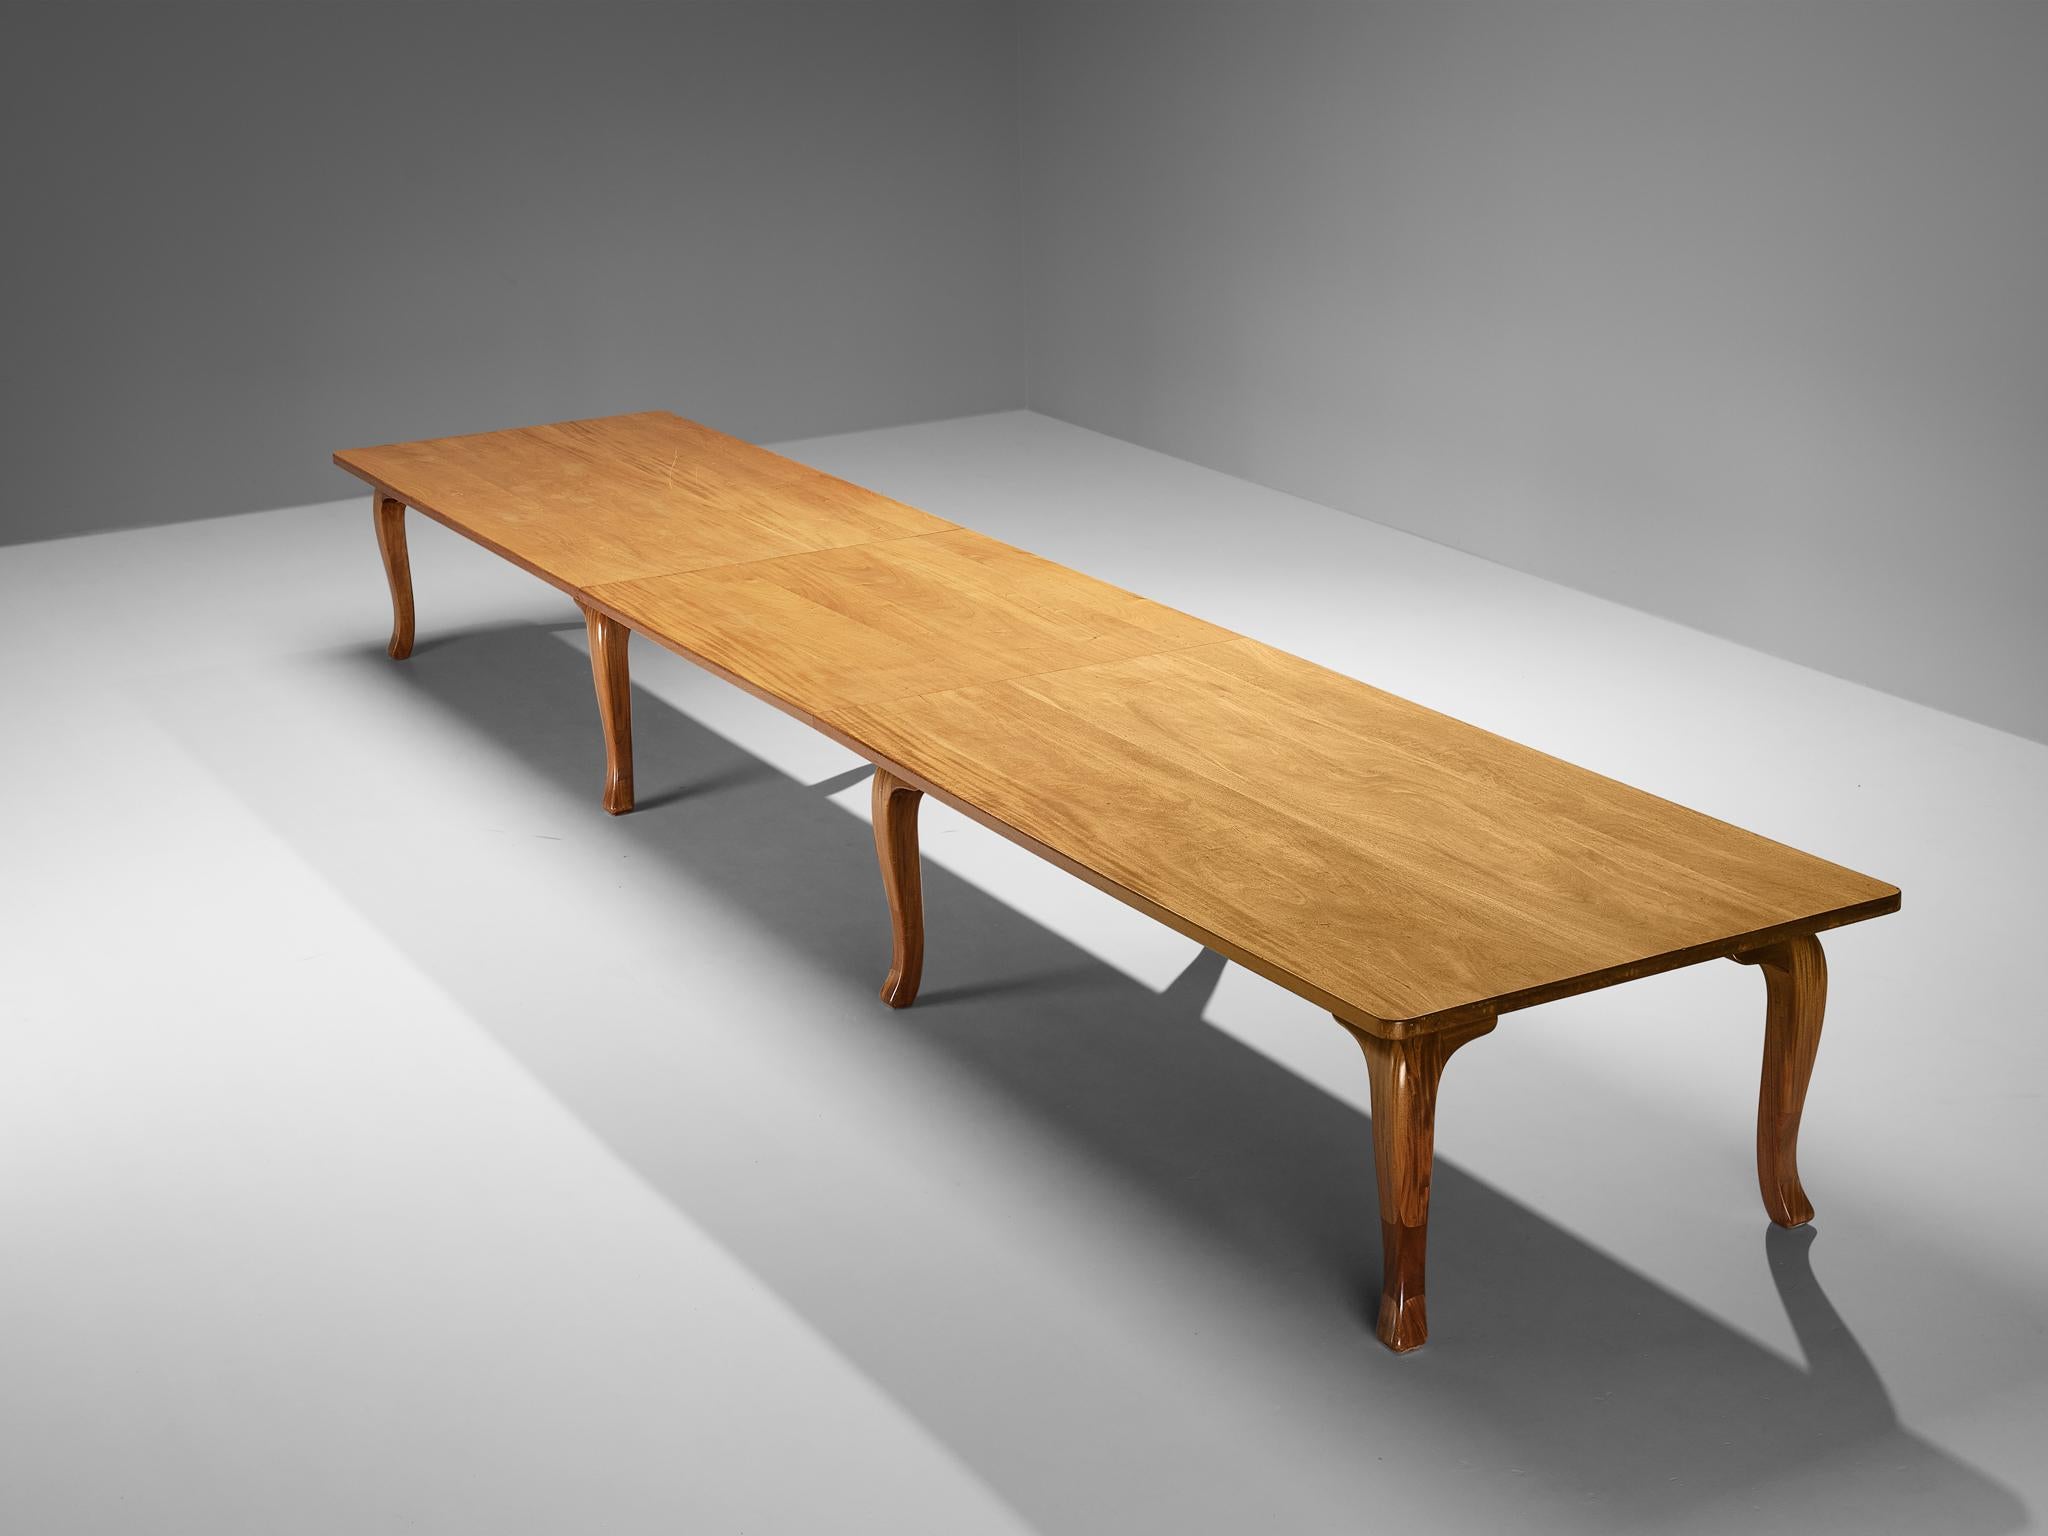 Table de salle à manger ou de conférence, acajou teinté, dessous en pin, Danemark, années 1960

Cette table grandiose d'origine danoise présente une structure tripartite définie par des lignes claires et des matériaux fins. Le plateau de forme